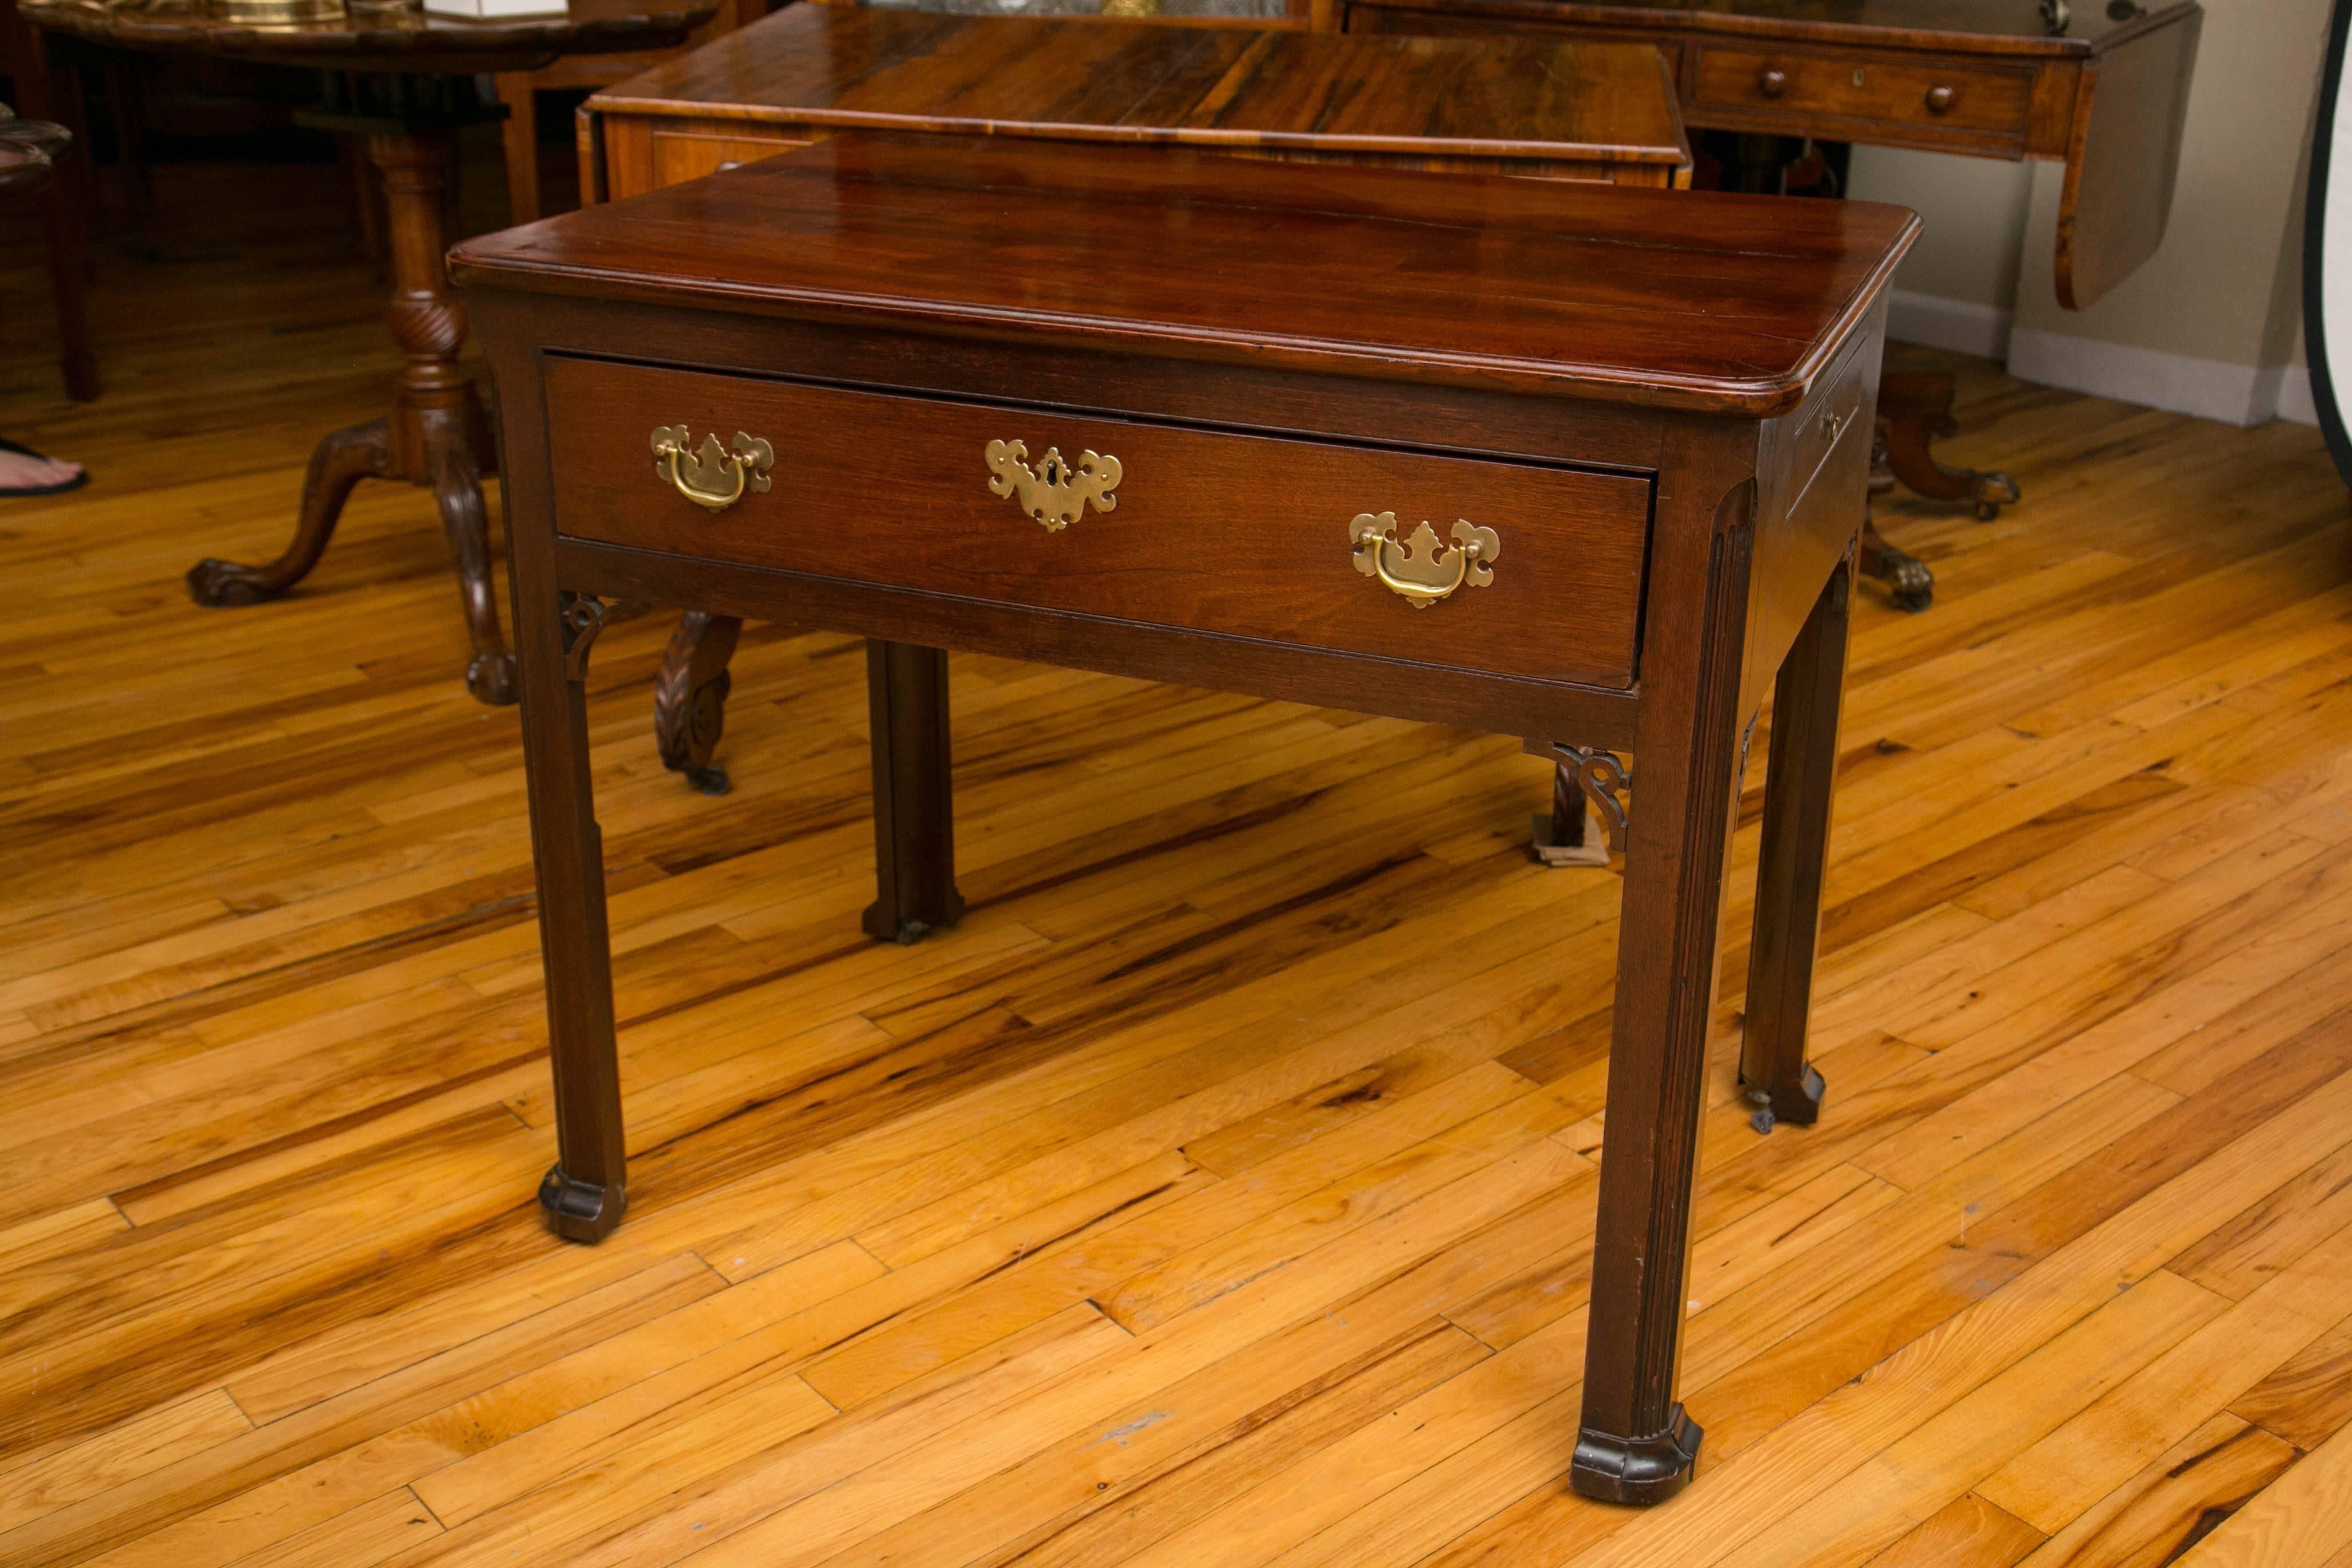 Table d'architecte du XVIIIe siècle avec un seul tiroir qui s'ouvre pour révéler plusieurs compartiments. L'avant de la table est décoré de consoles ouvertes. L'un des côtés de la table est doté d'un tiroir pivotant long et étroit.